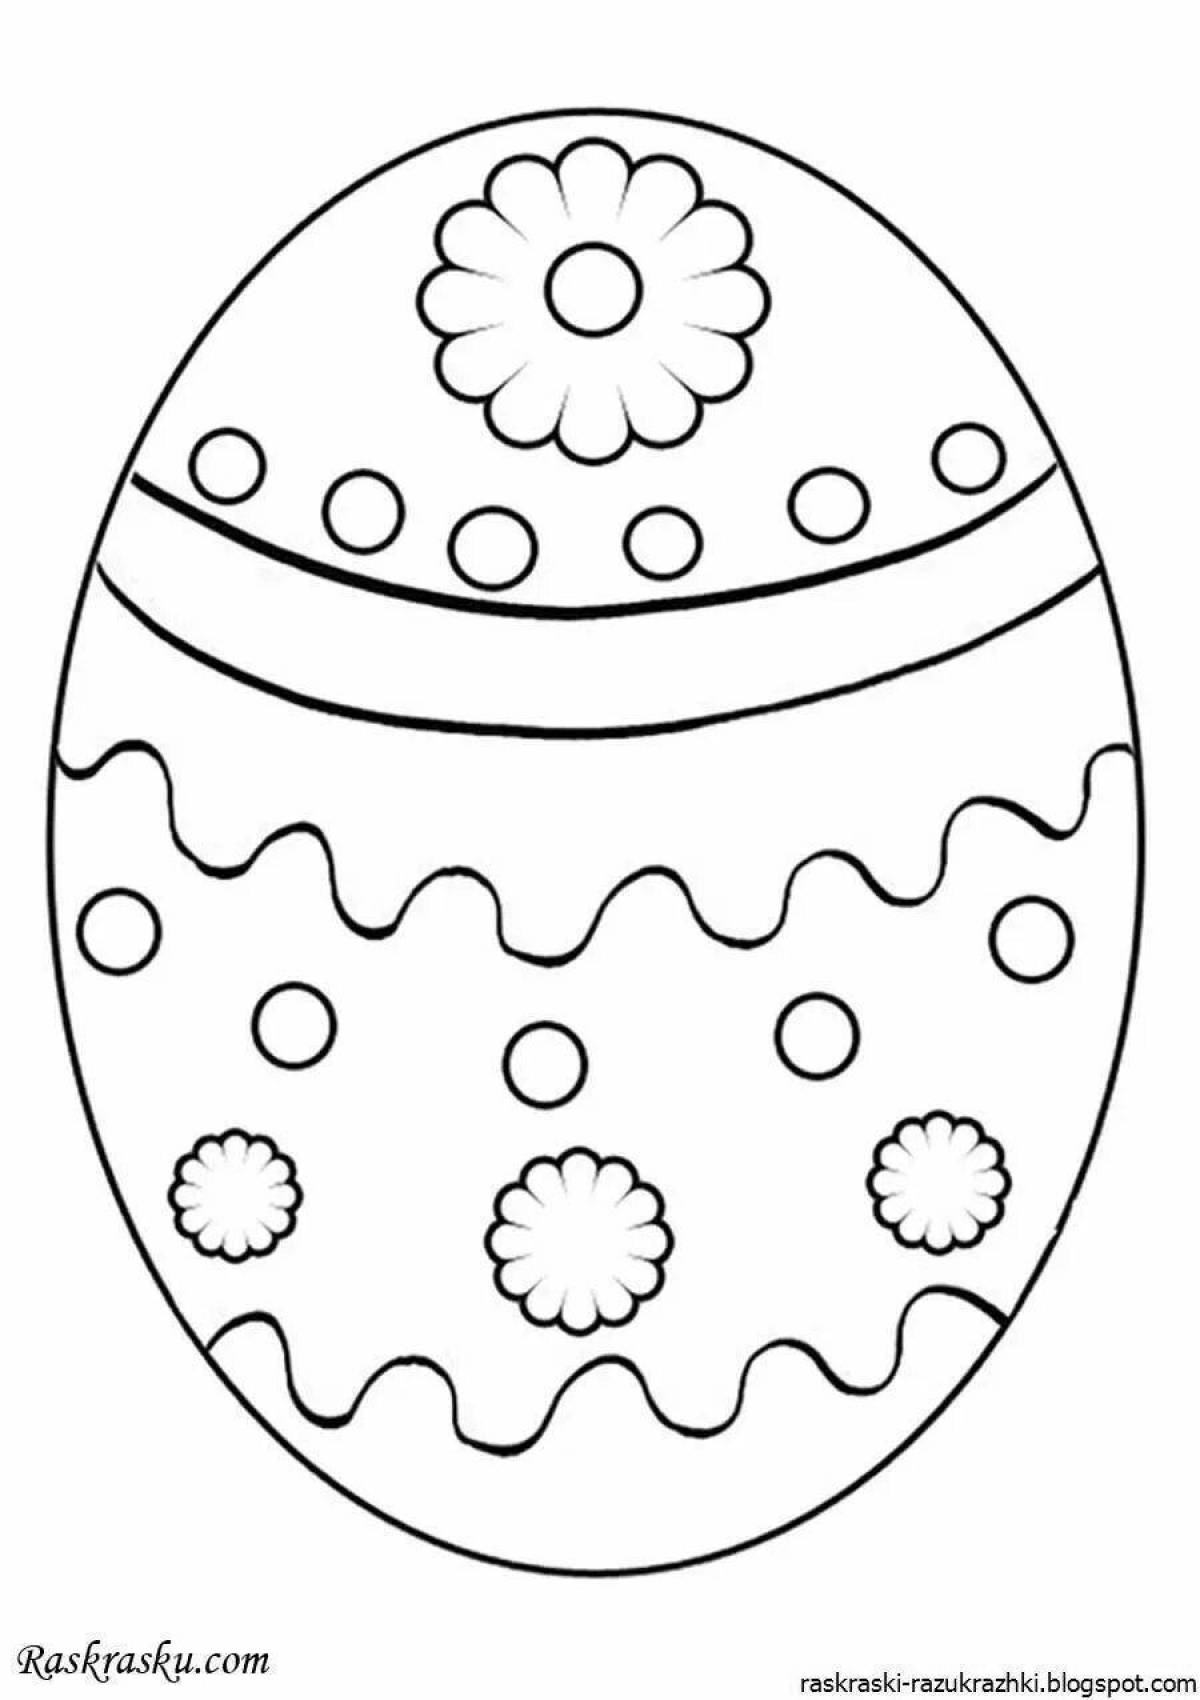 Сказочная страница раскраски яичек